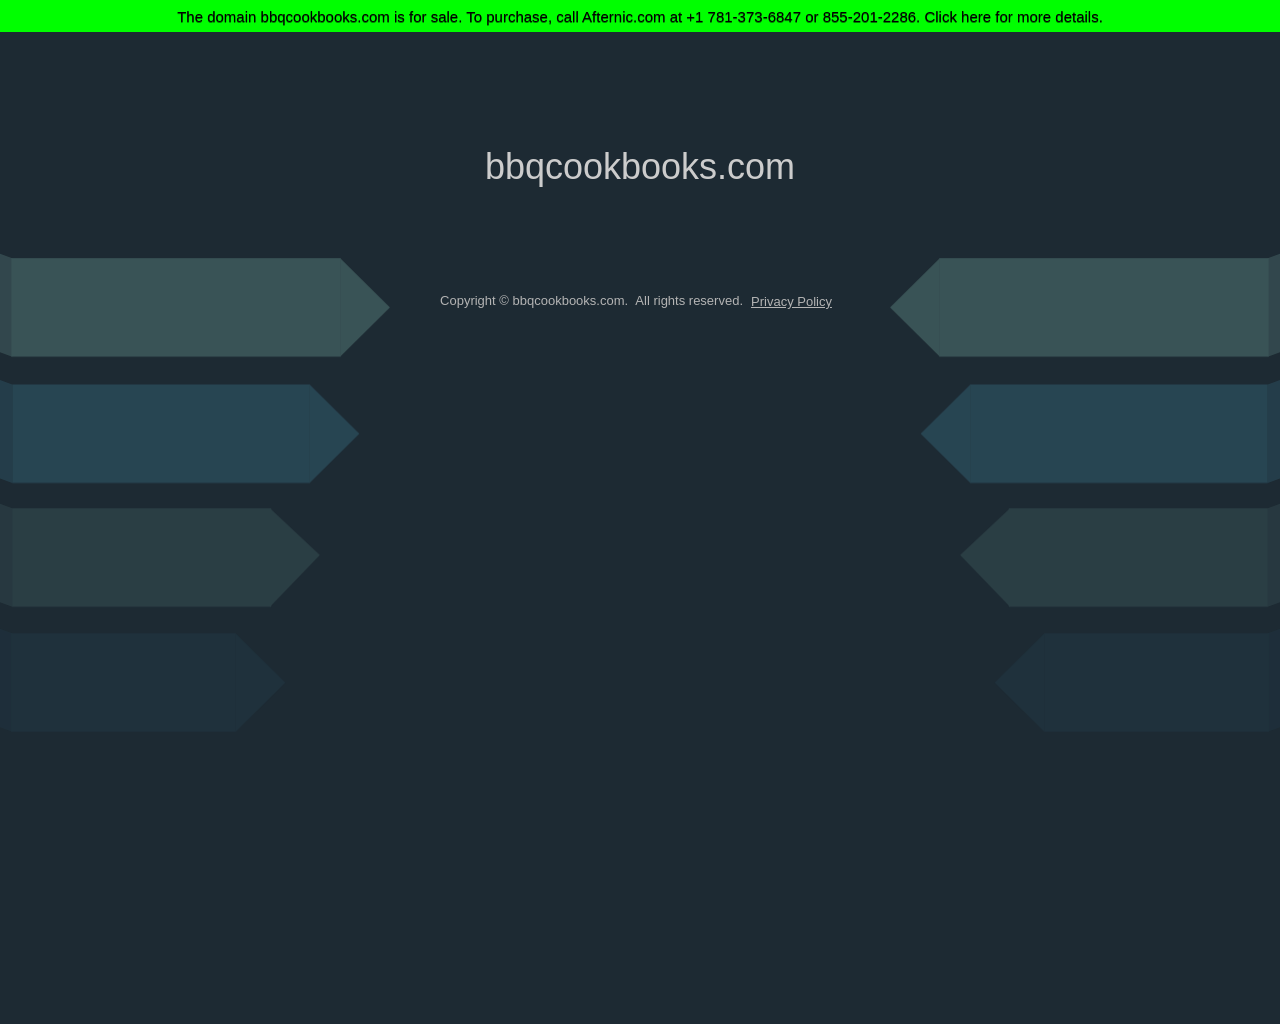 bbqcookbooks.com